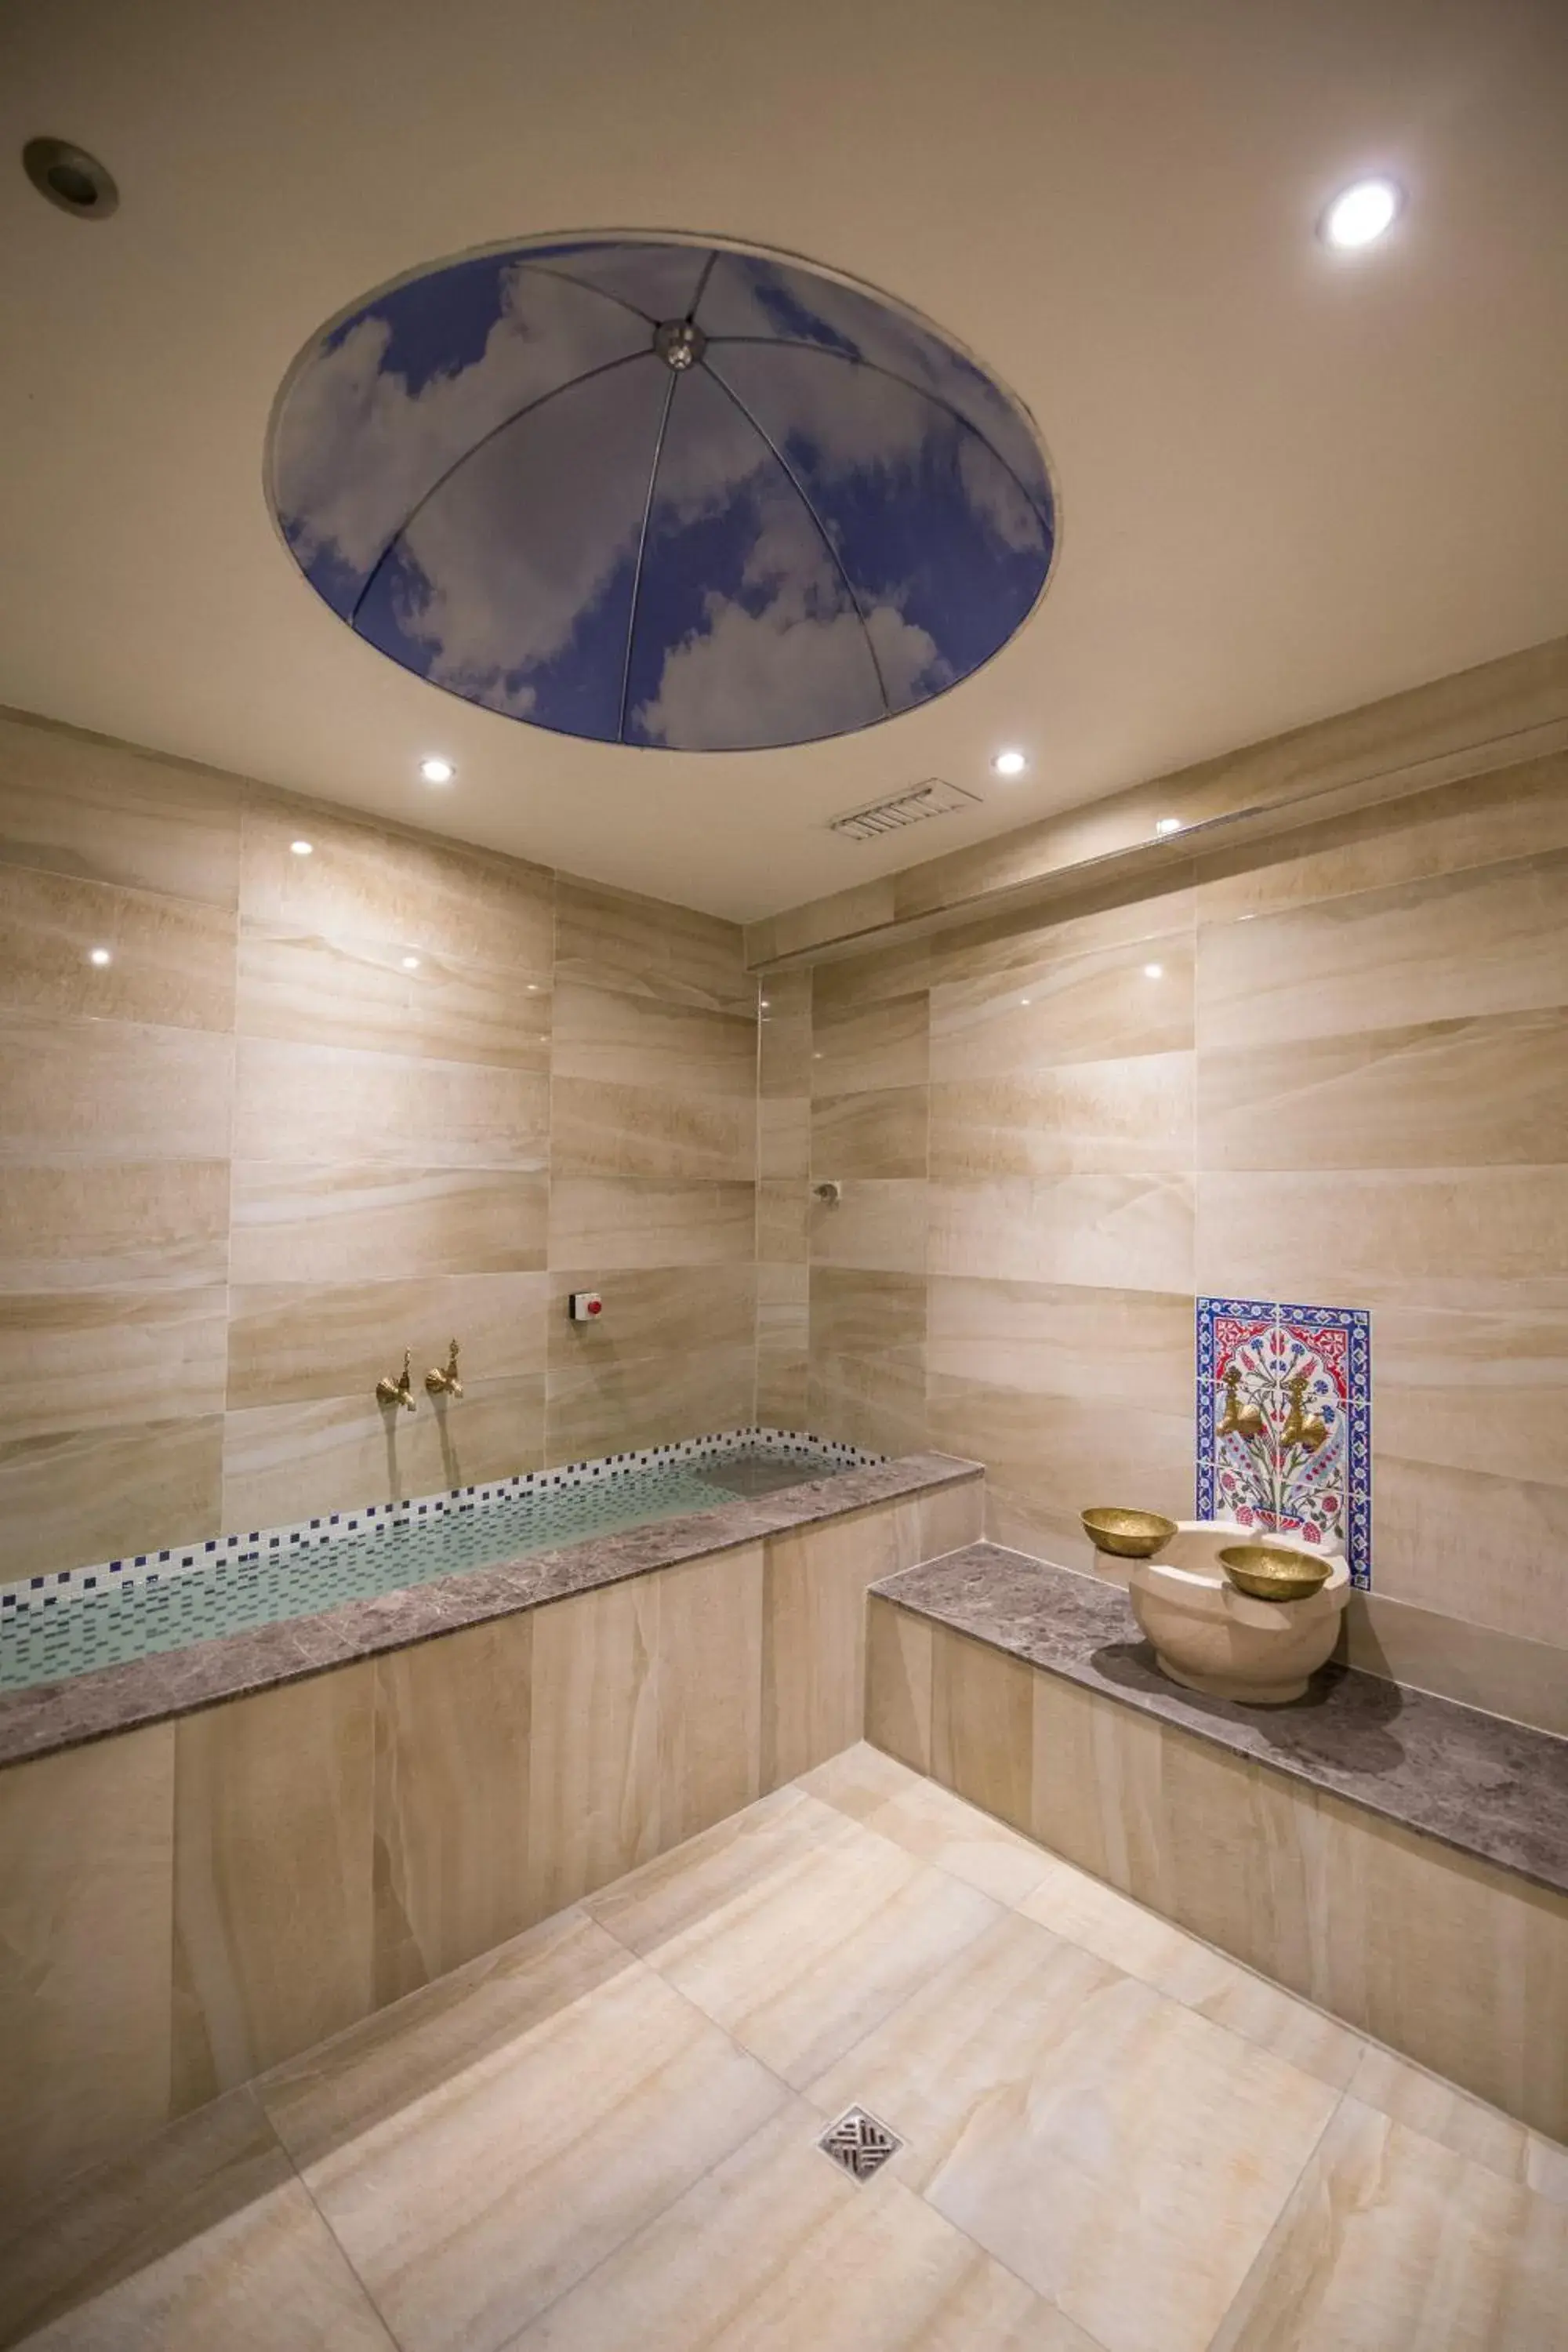 Public Bath, Bathroom in Ruba Palace Thermal Hotel